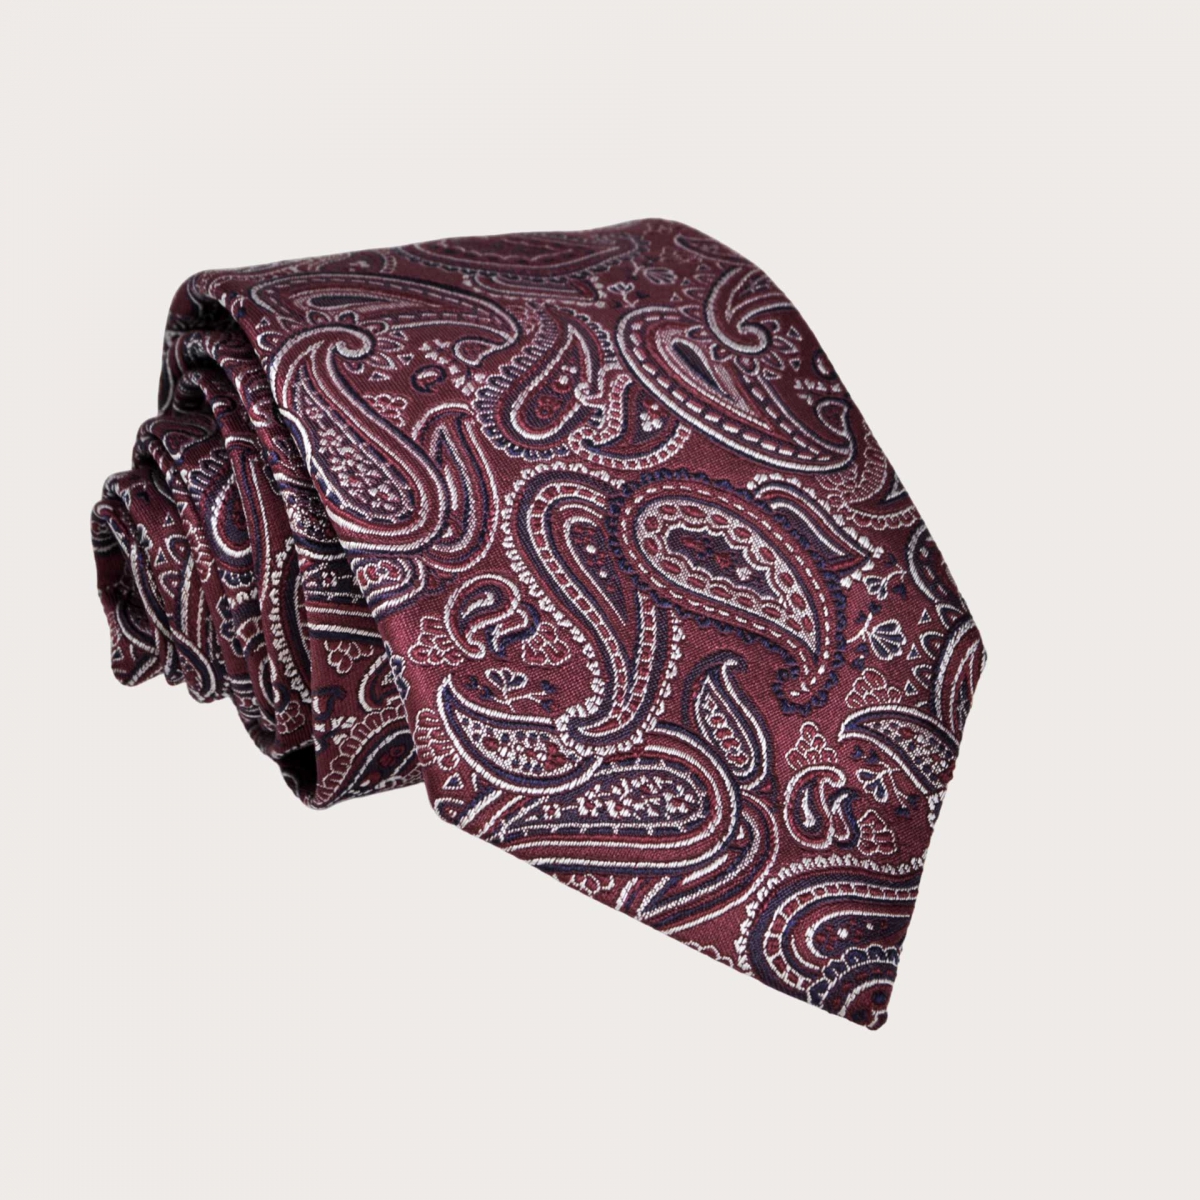 BRUCLE Men's burgundy paisley tie in jacquard silk